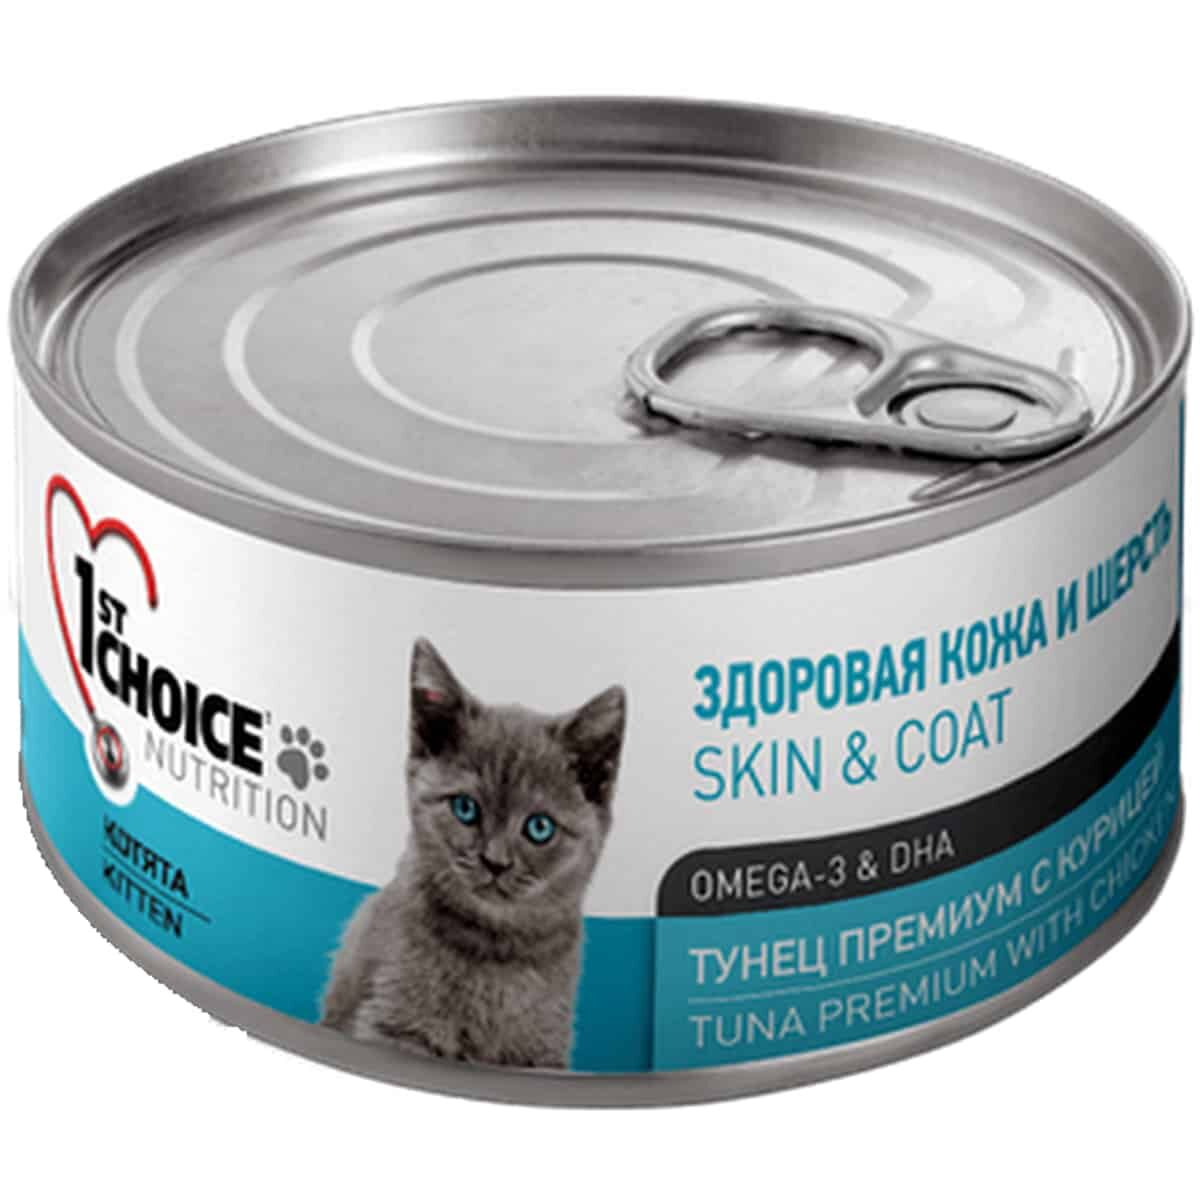 Kitten Tuna premium 2